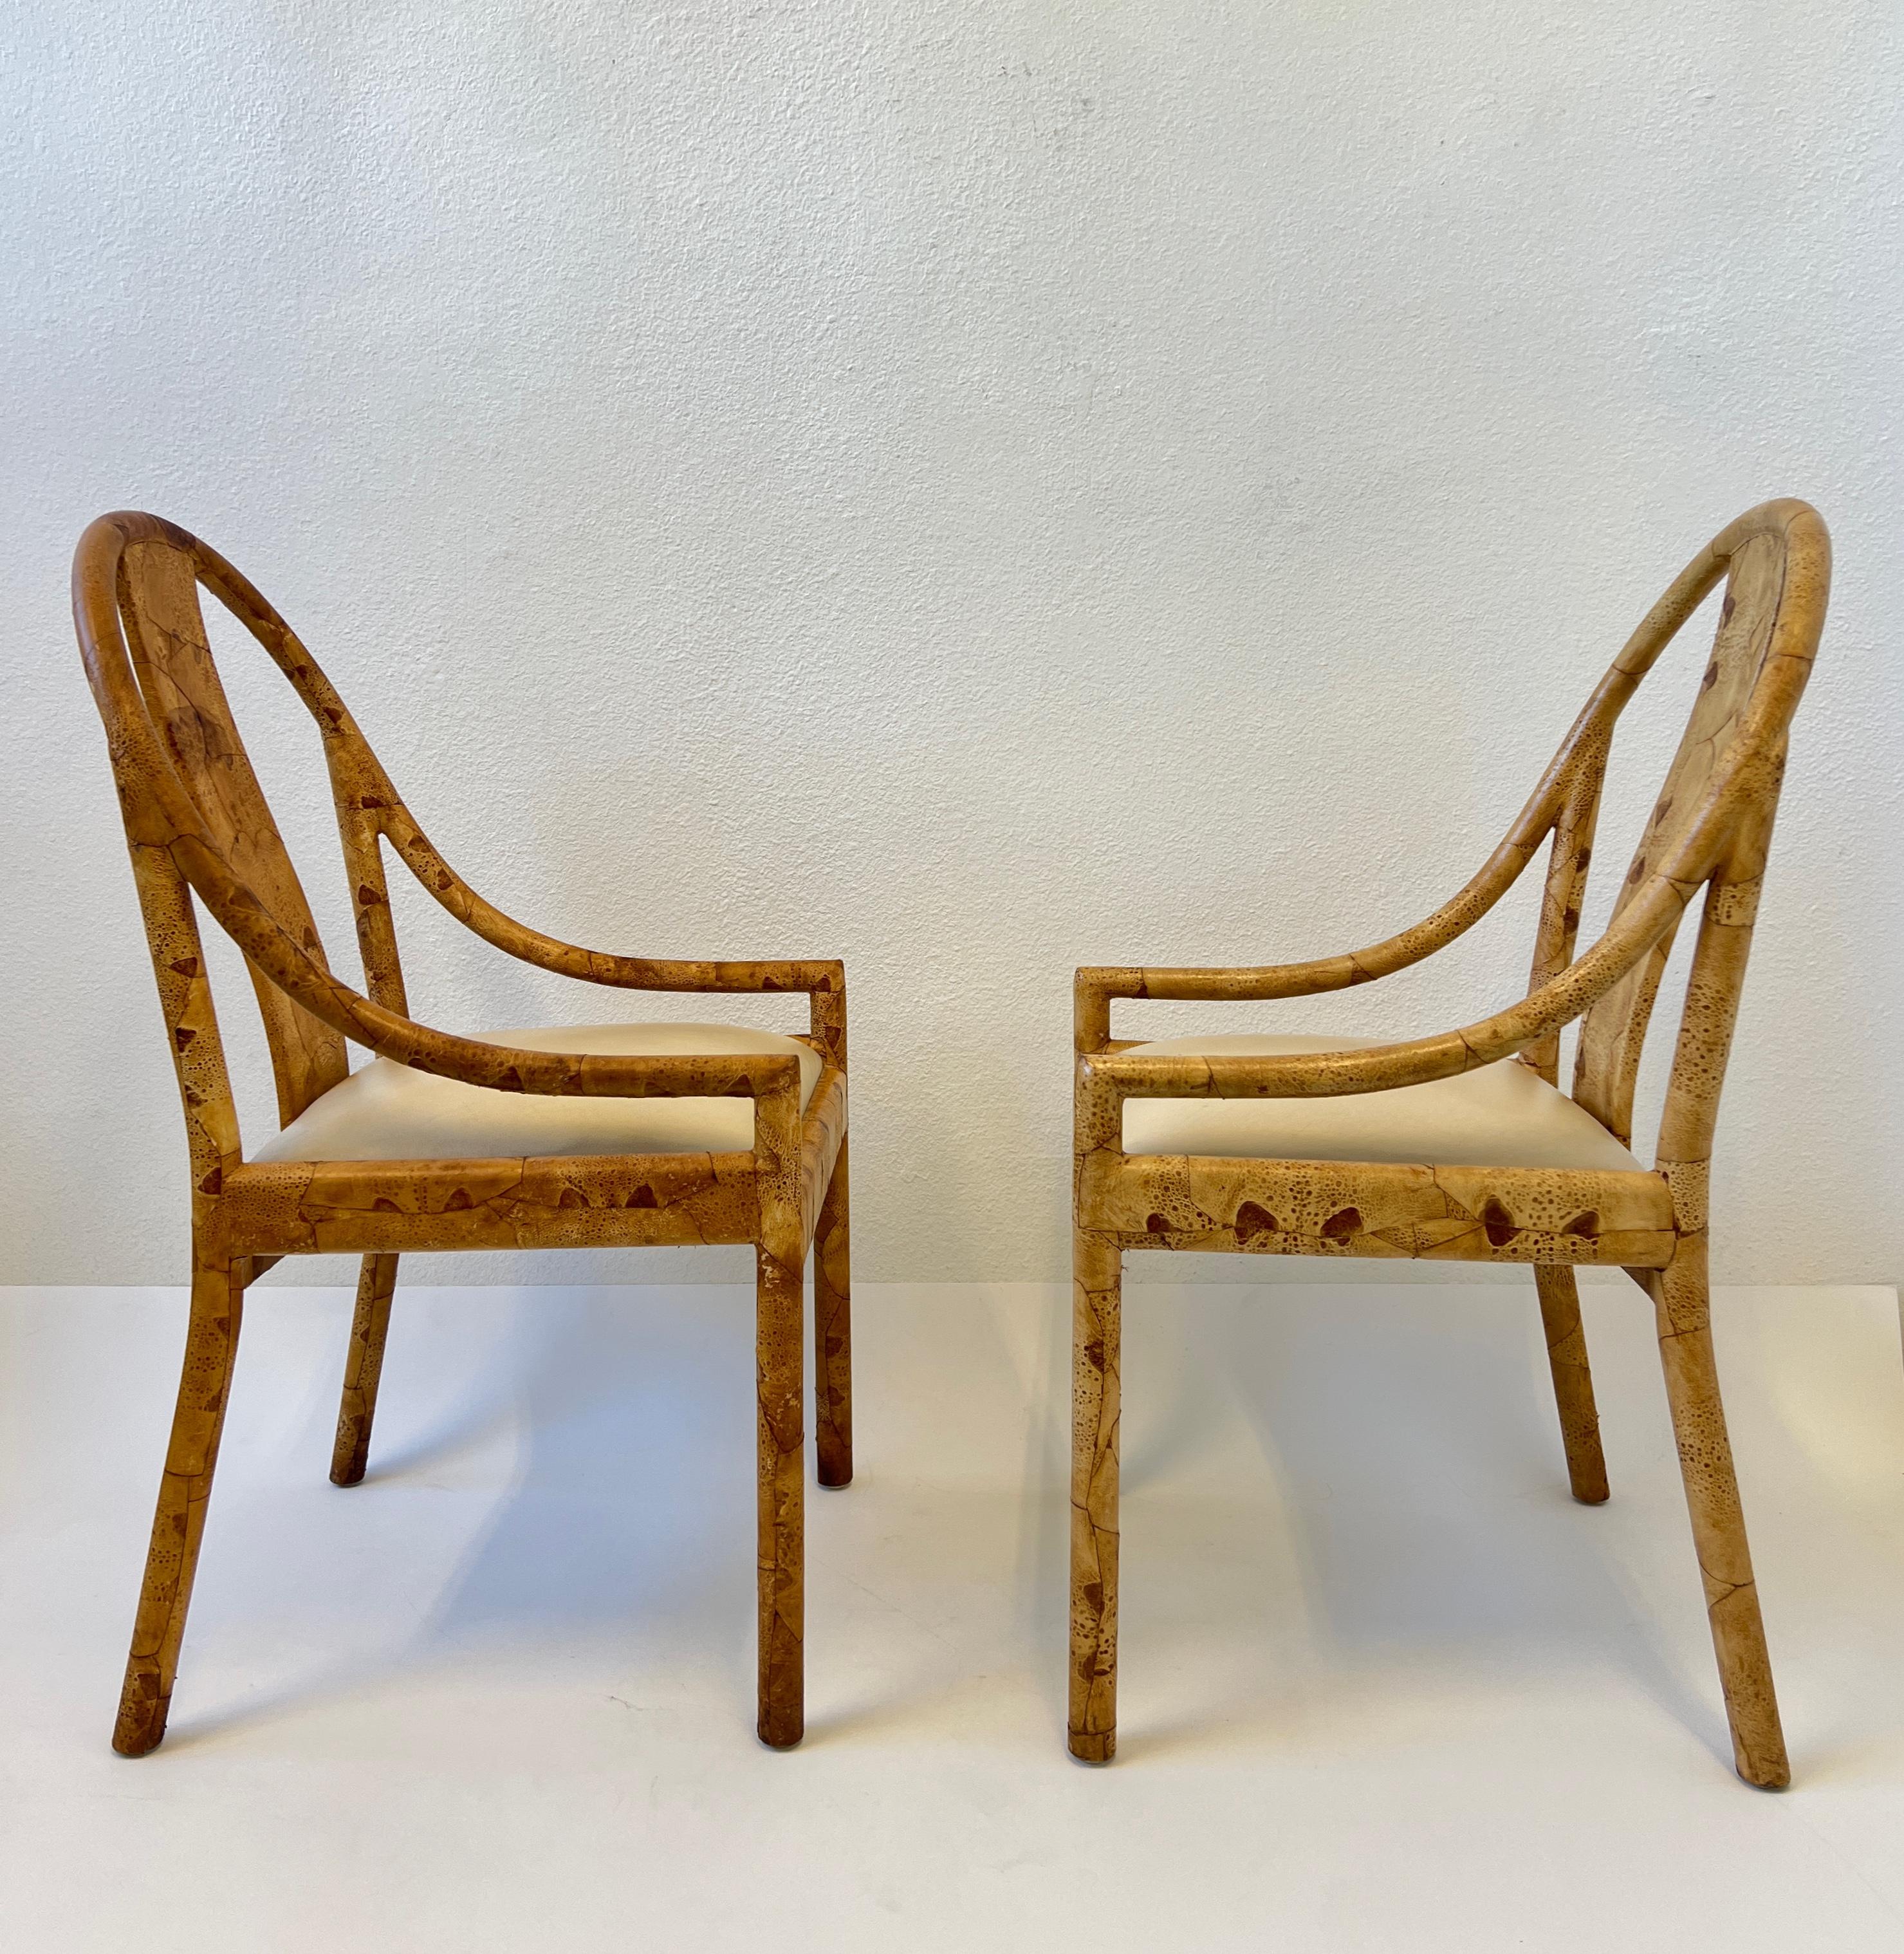 Glamouröses Paar Krötenleder-Patchwork-Sessel aus den 1980er Jahren. 
Er ist aus Holz gefertigt, mit Krötenleder bezogen und lackiert, der Sitz ist aus weißem Leder. 
In originalem Vintage-Zustand. Diese wurden in einem Heimbüro verwendet, eines